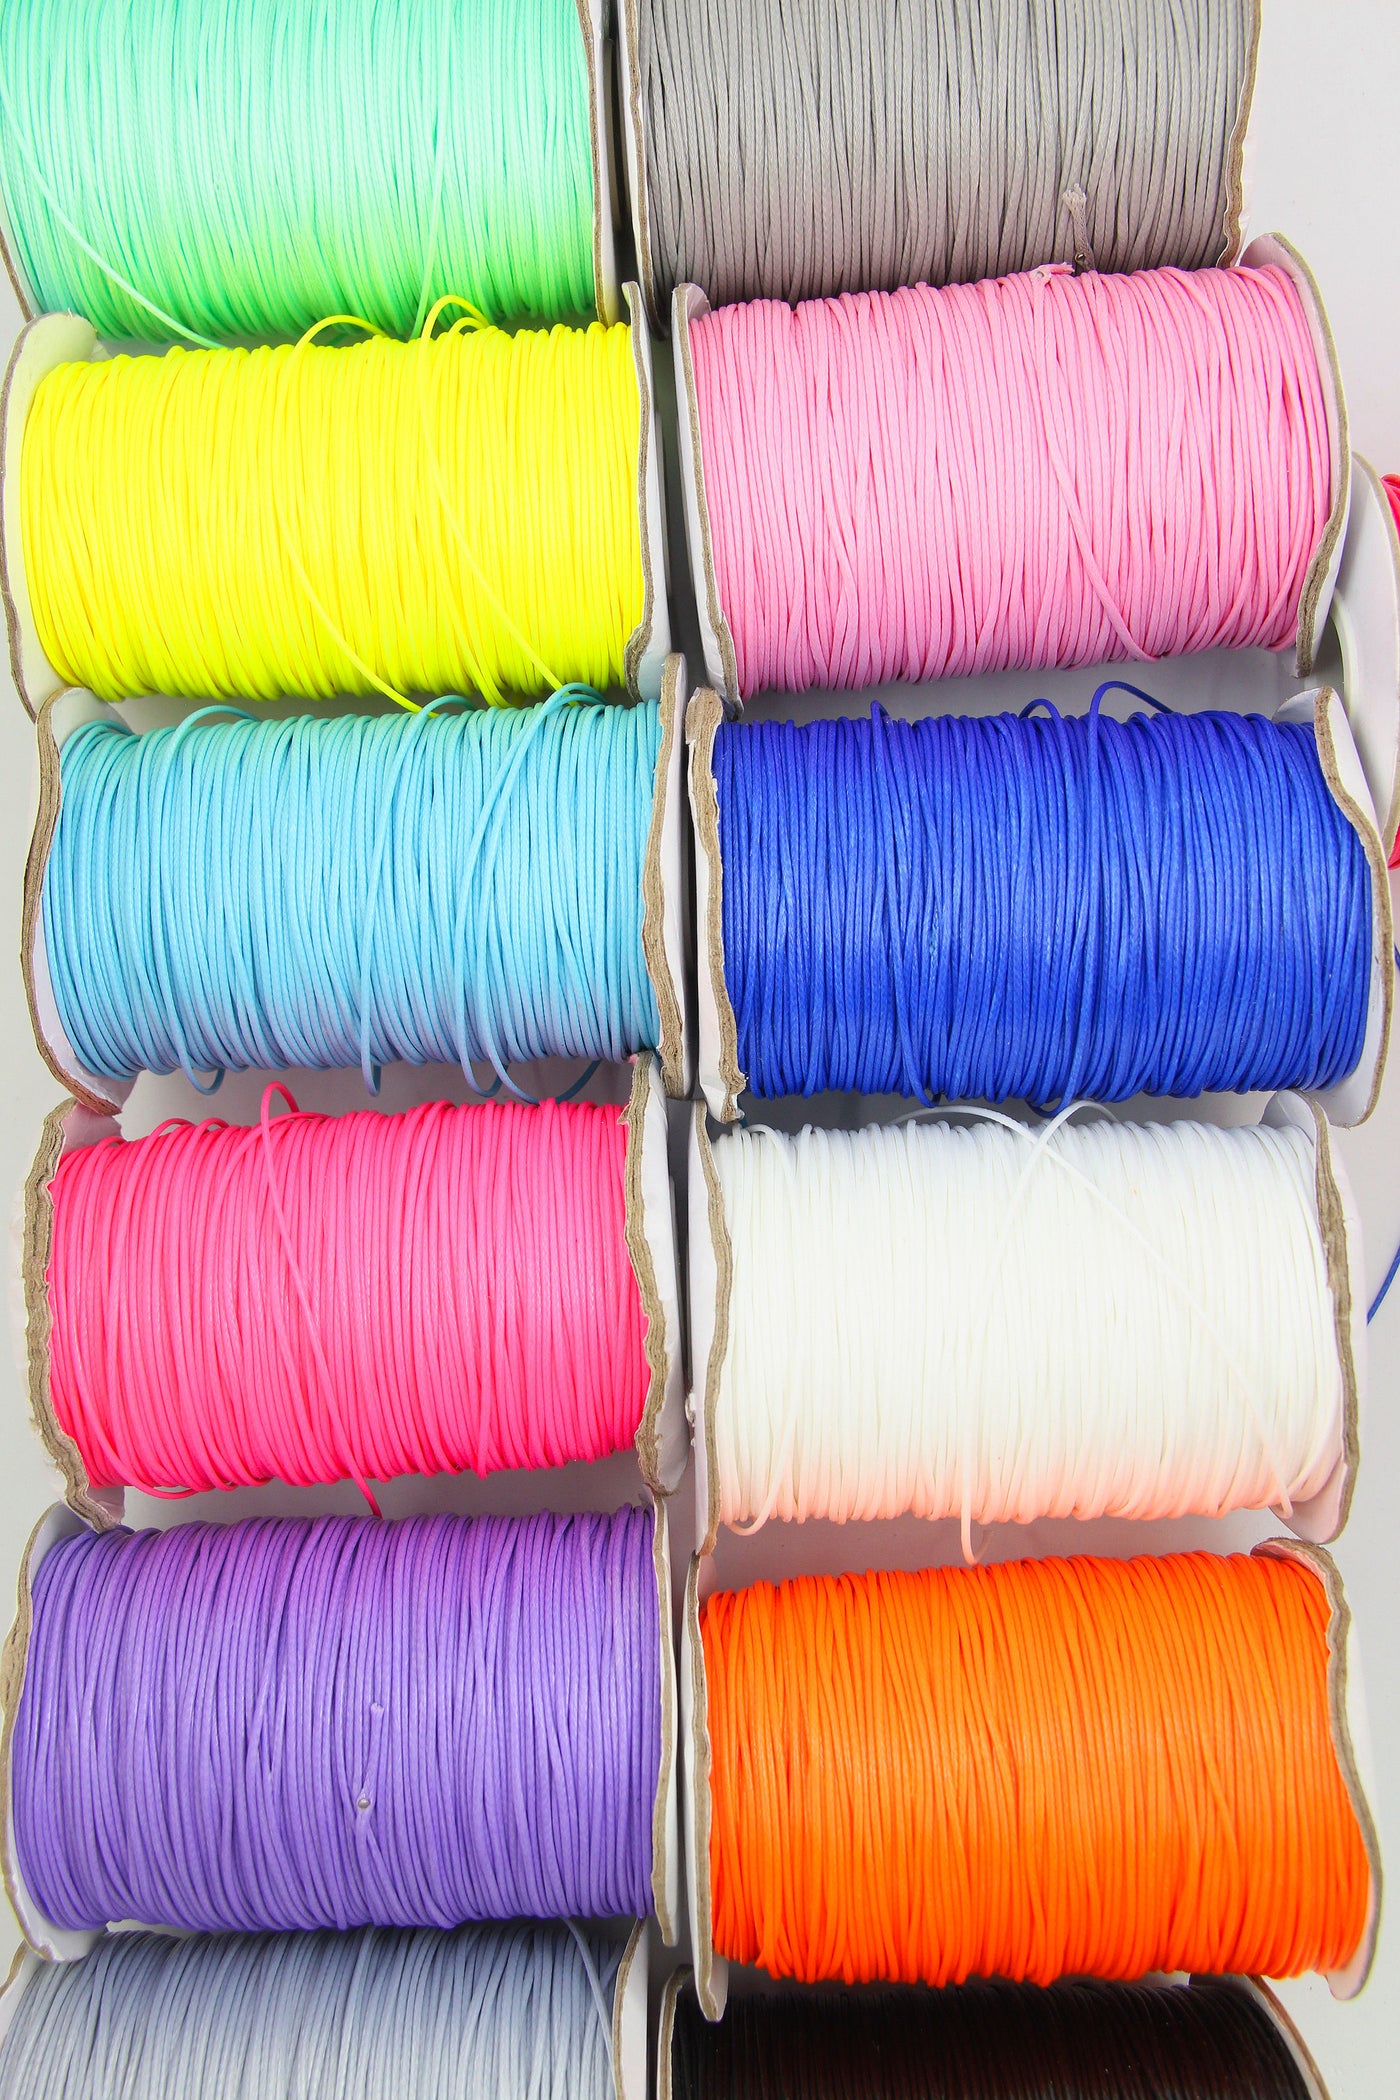 1mm Waxed Nylon Beading Thread, Macrame, Shamballa, Kumihimo Cord, Ass